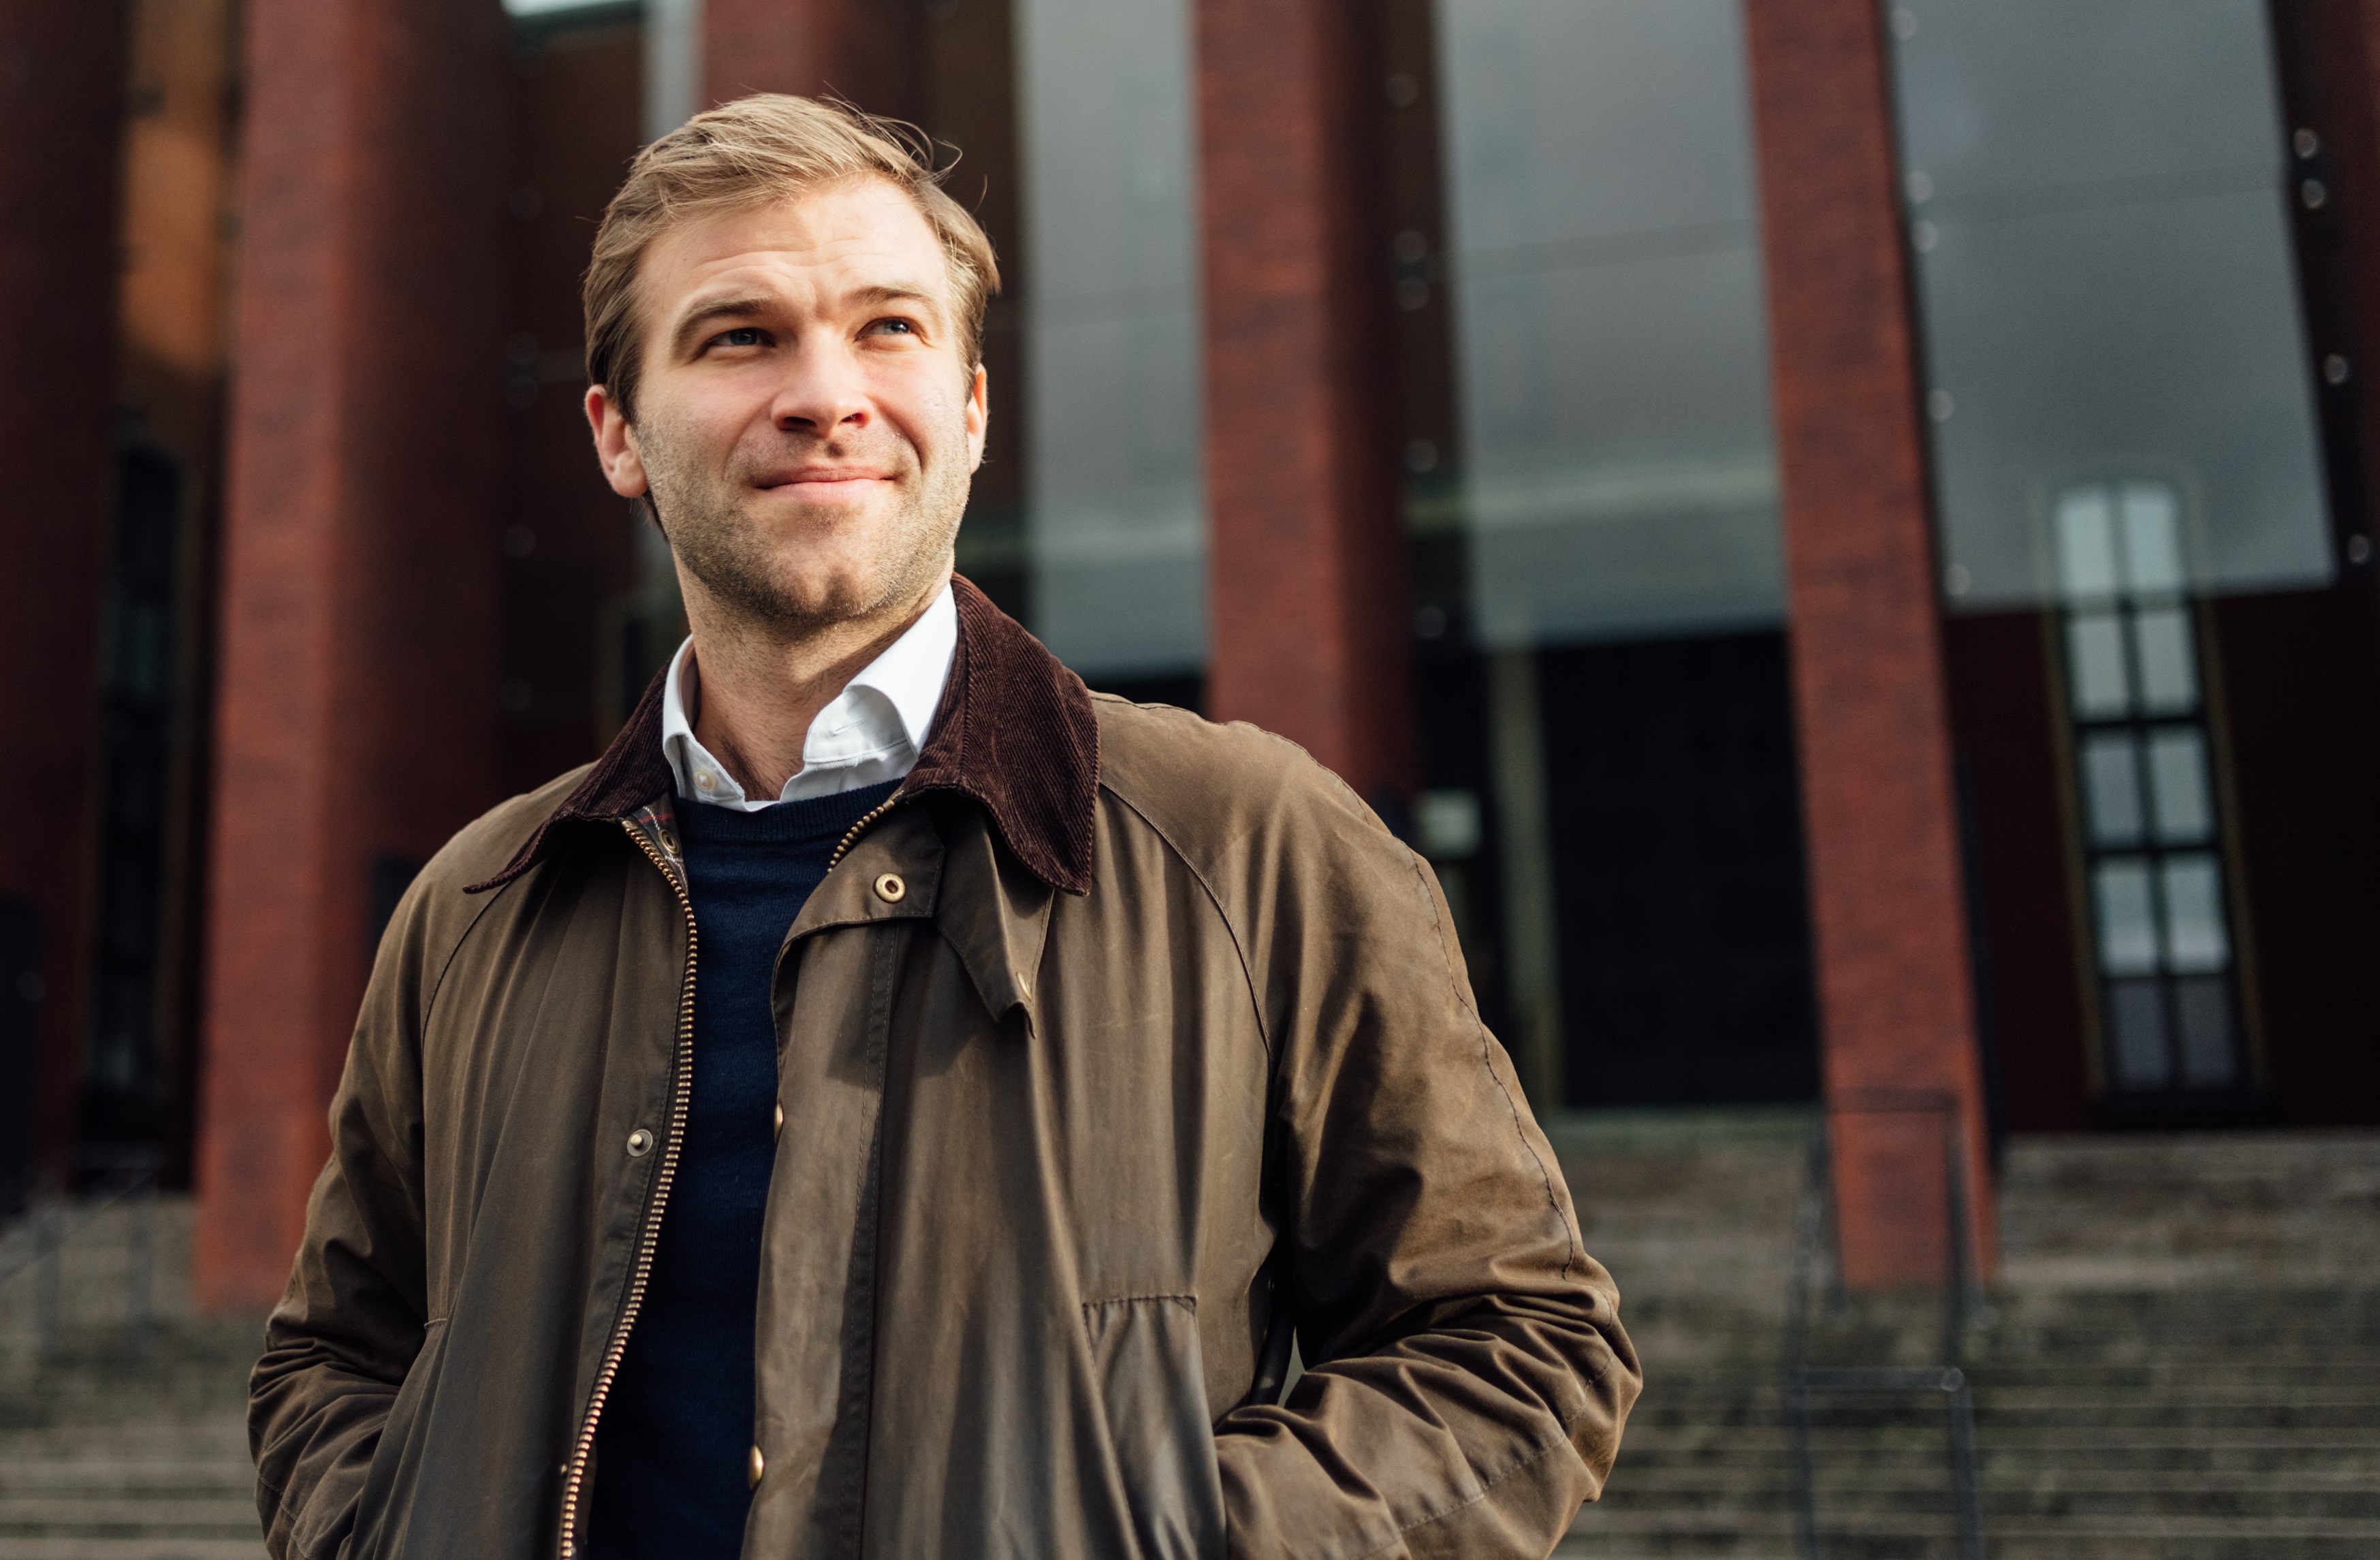 Der Bochumer Tobias Cremer kandidiert für die SPD für das Europaparlament.